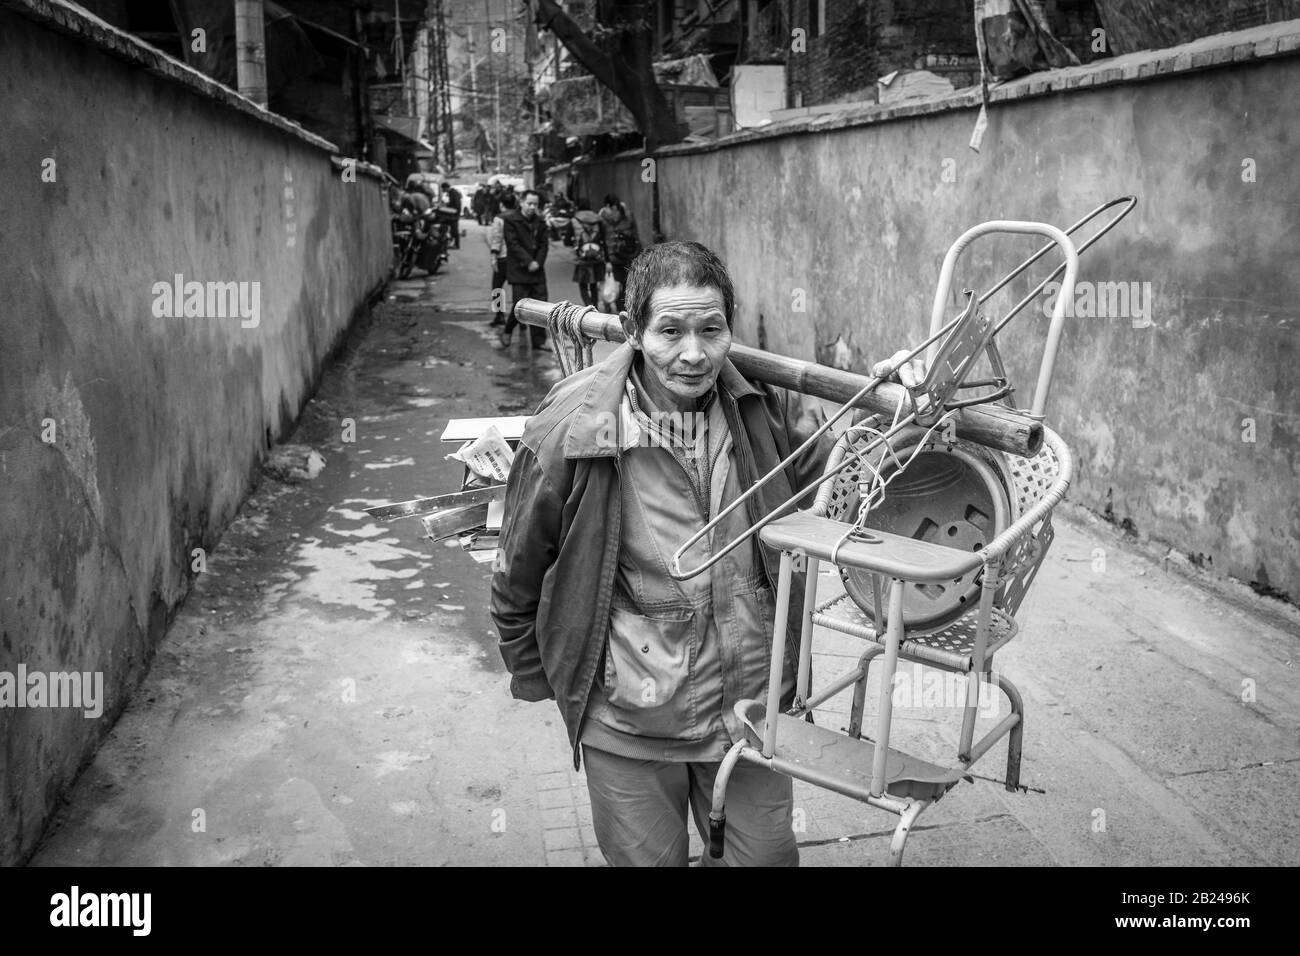 Scena di strada in un quartiere della città vecchia di Chongqing. Una donna con i suoi mobili esce dal suo appartamento, Chongqing, Cina Foto Stock